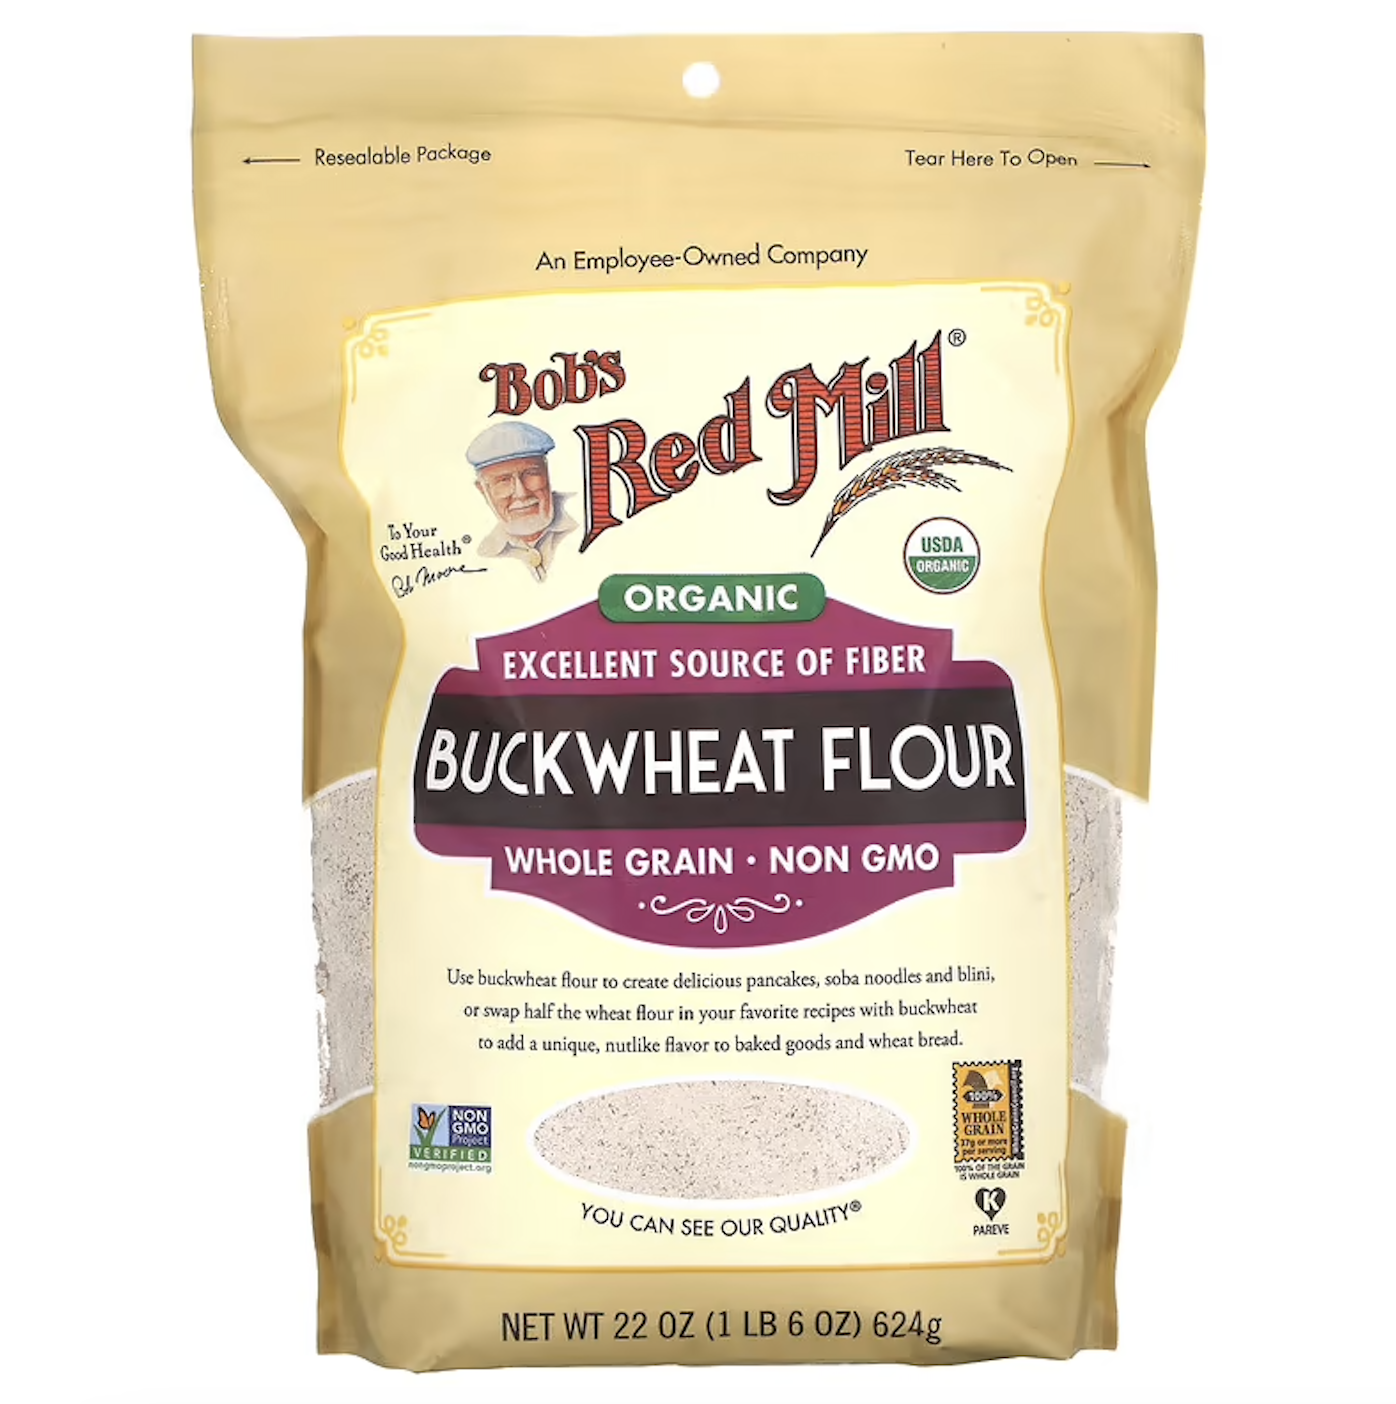 TÚI 624g BỘT KIỀU MẠCH - HỮU CƠ Bob s Red Mill, Organic Buckwheat Flour